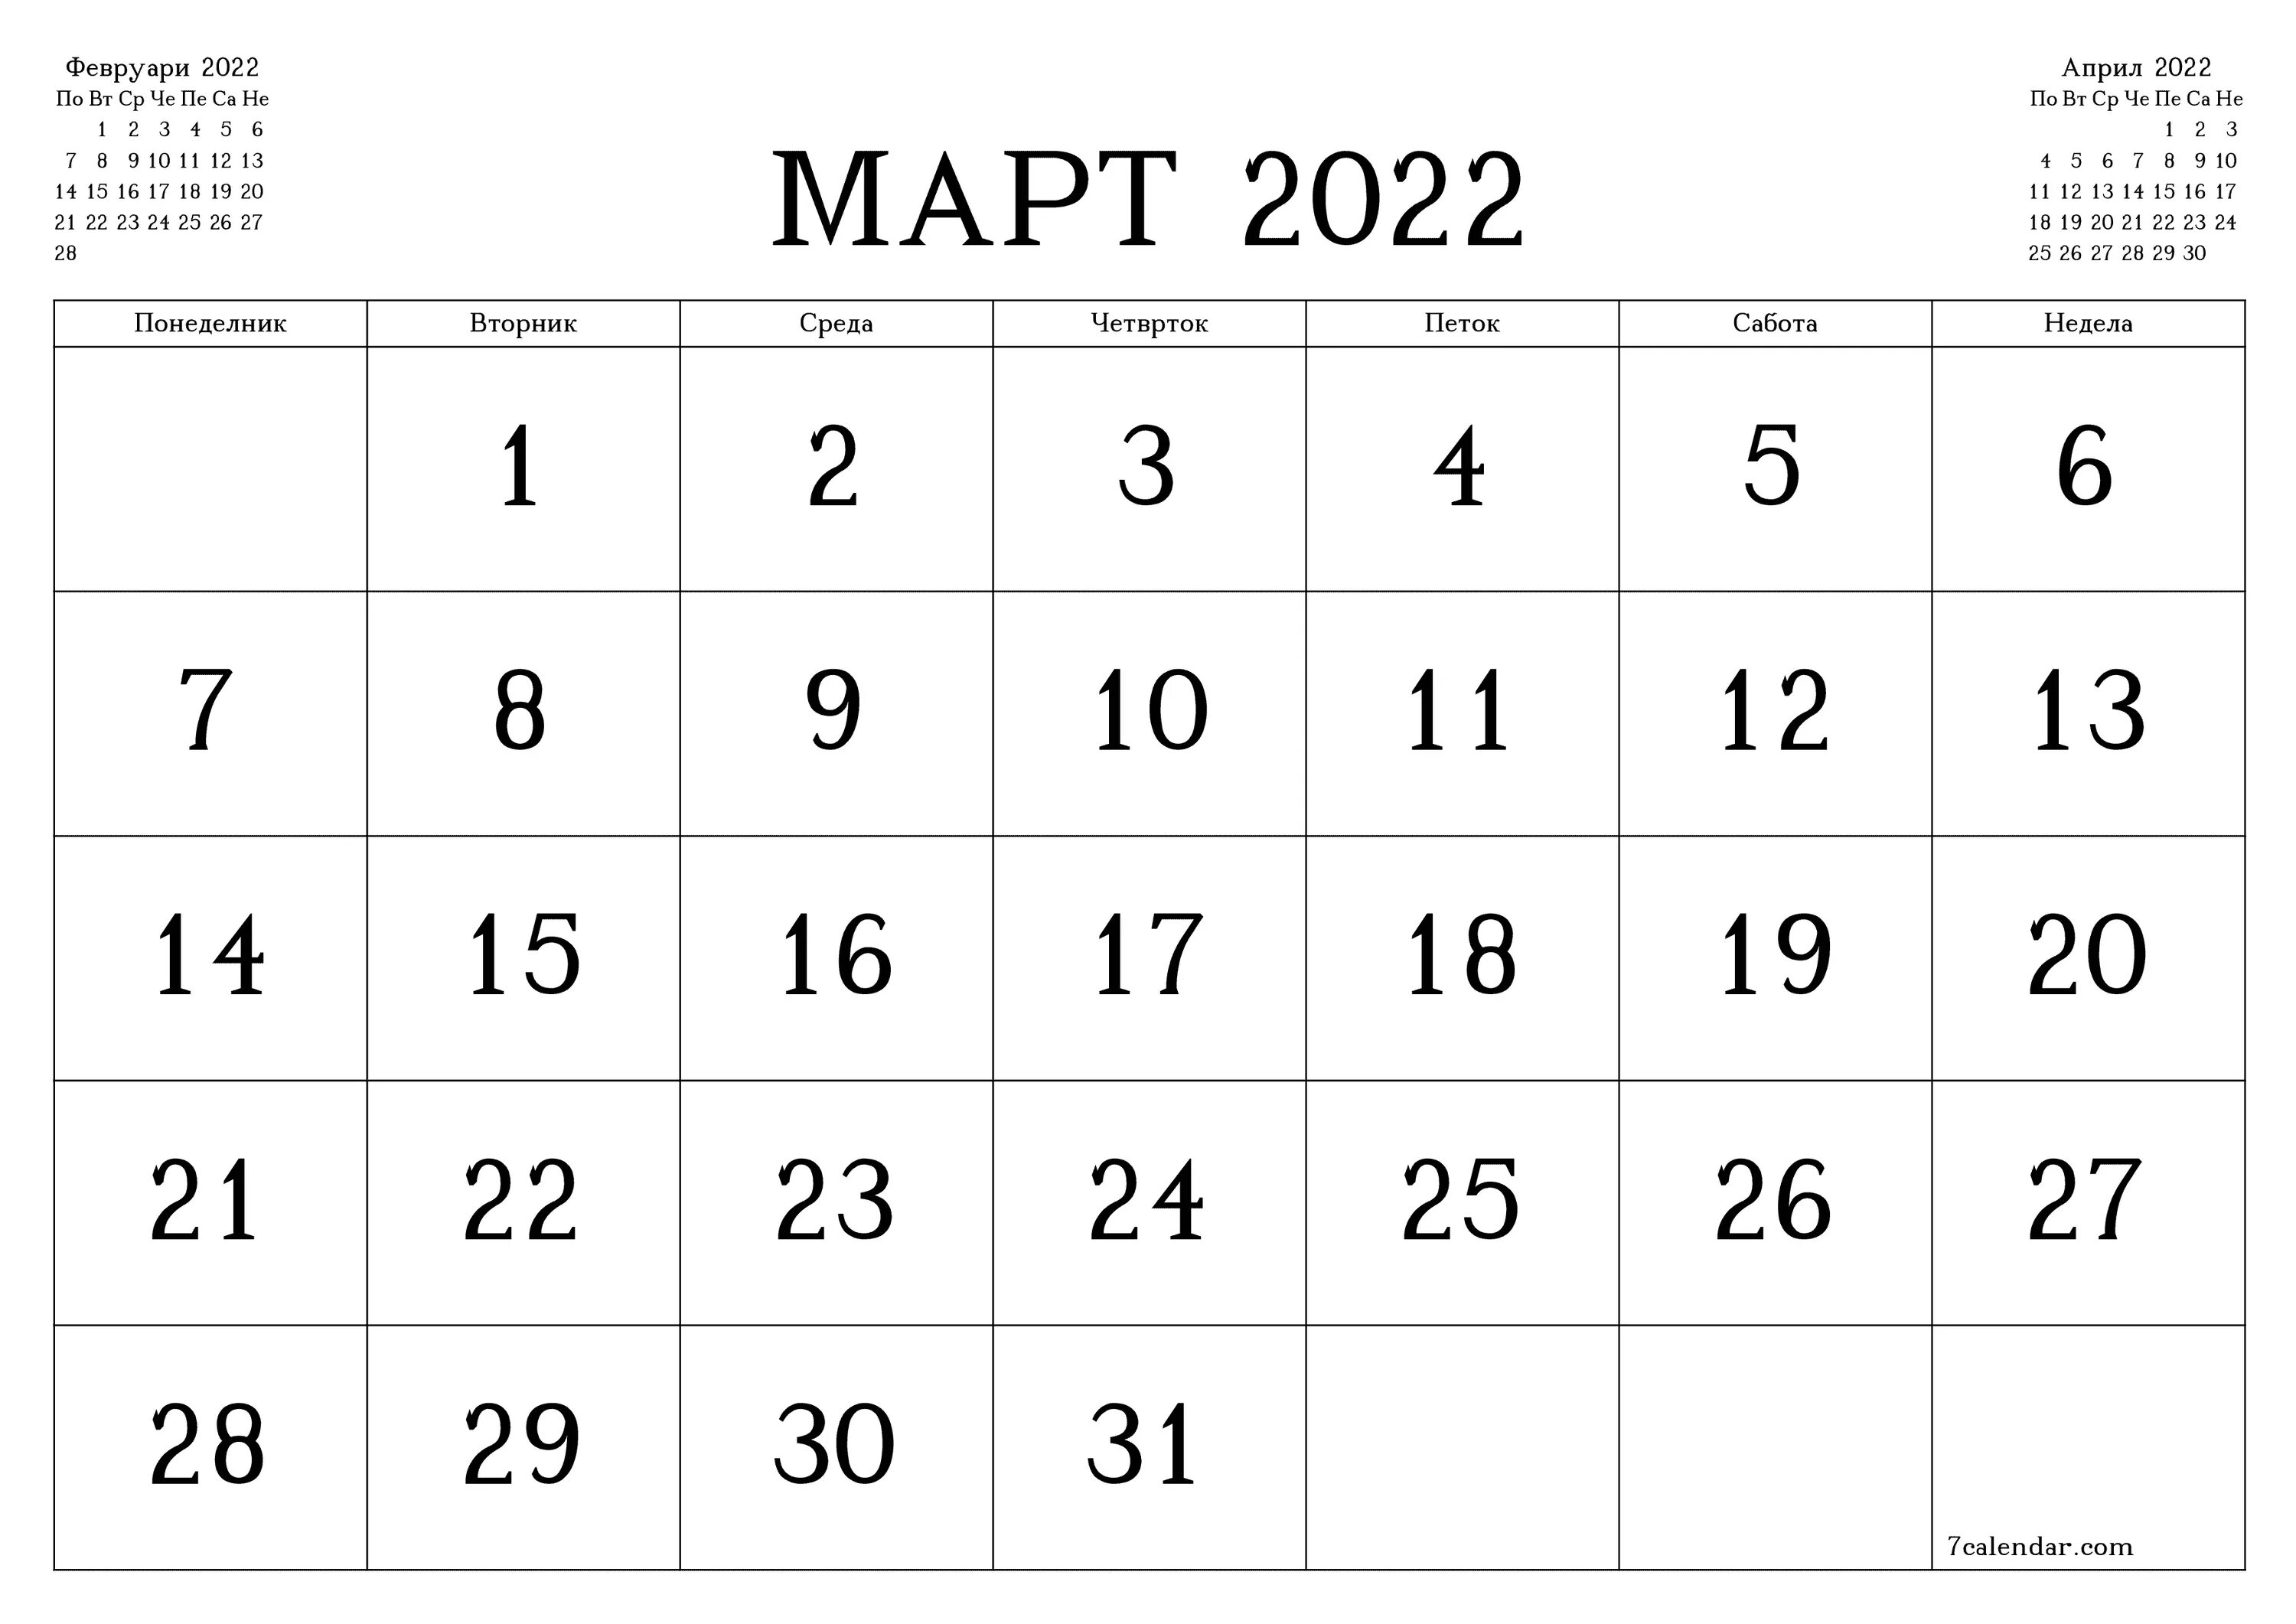 7calendar com. Календарь июль 2022. Календарь март 2022. Календарь 2022 март месяц. Календарь на март месяц 2022 года.